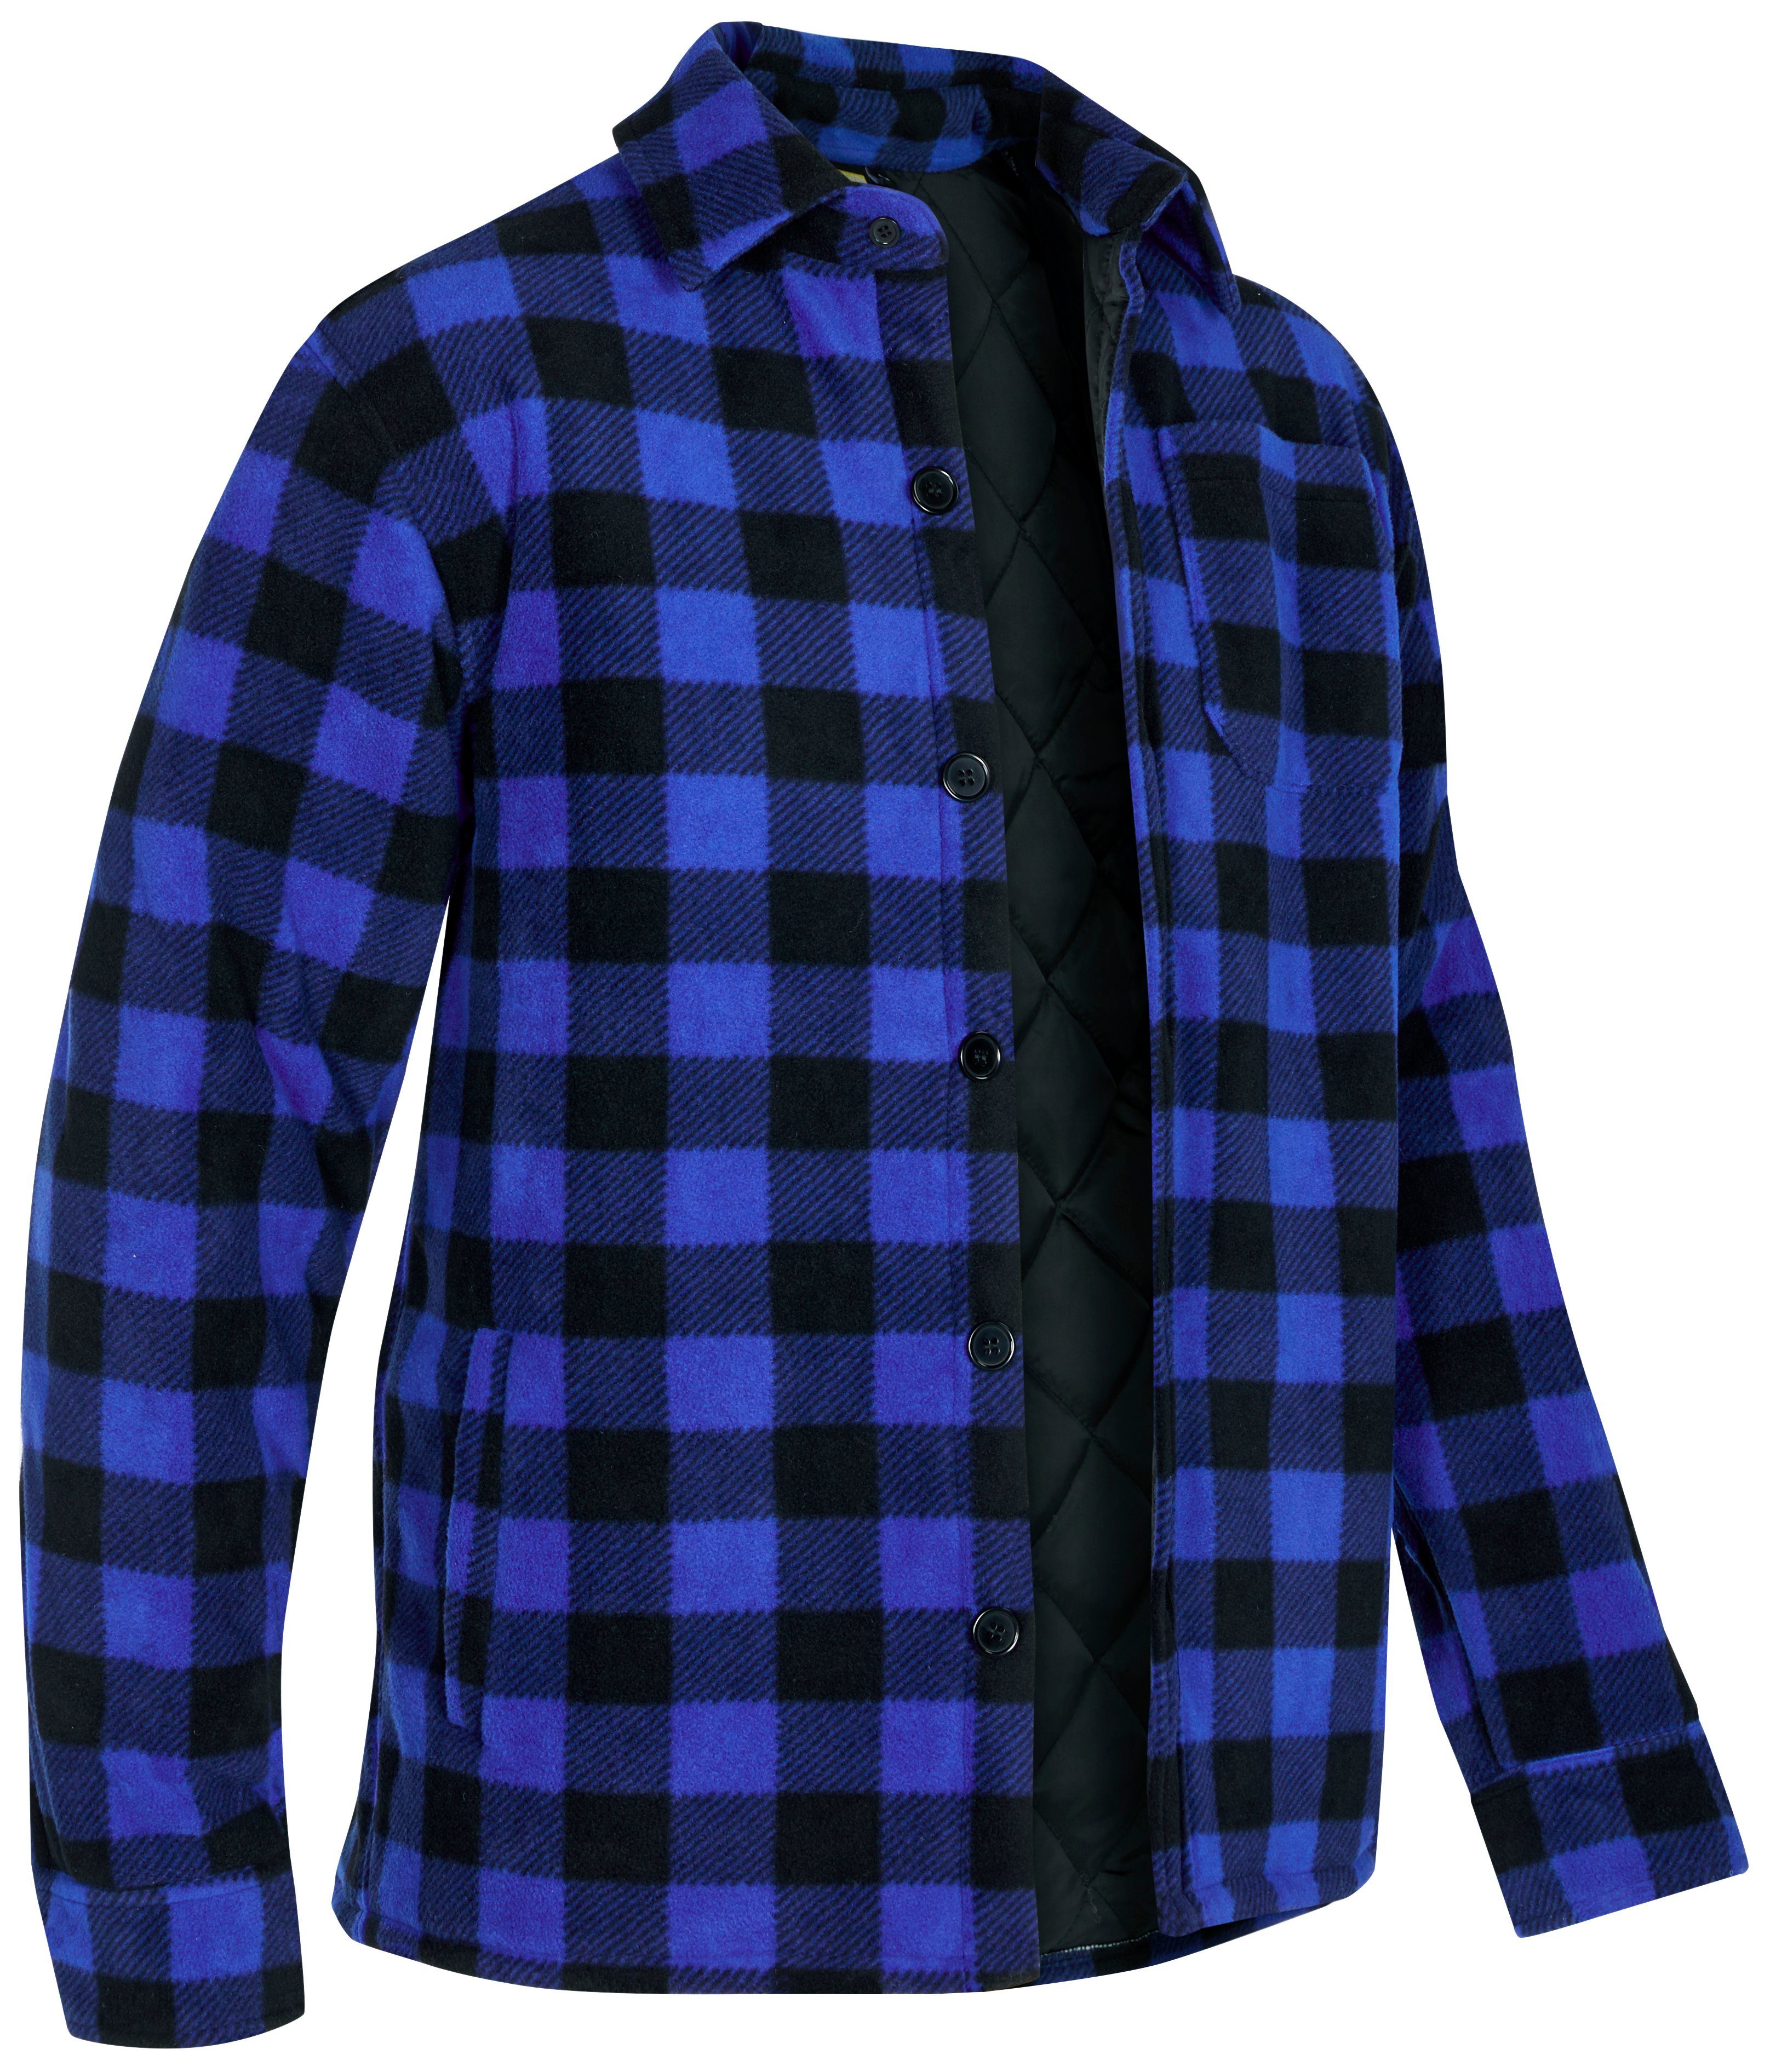 Northern Country Flanellhemd (als Jacke offen oder Hemd zugeknöpft zu tragen) warm gefüttert, mit 5 Taschen, mit verlängertem Rücken, Flanellstoff blau-schwarz | Freizeithemden